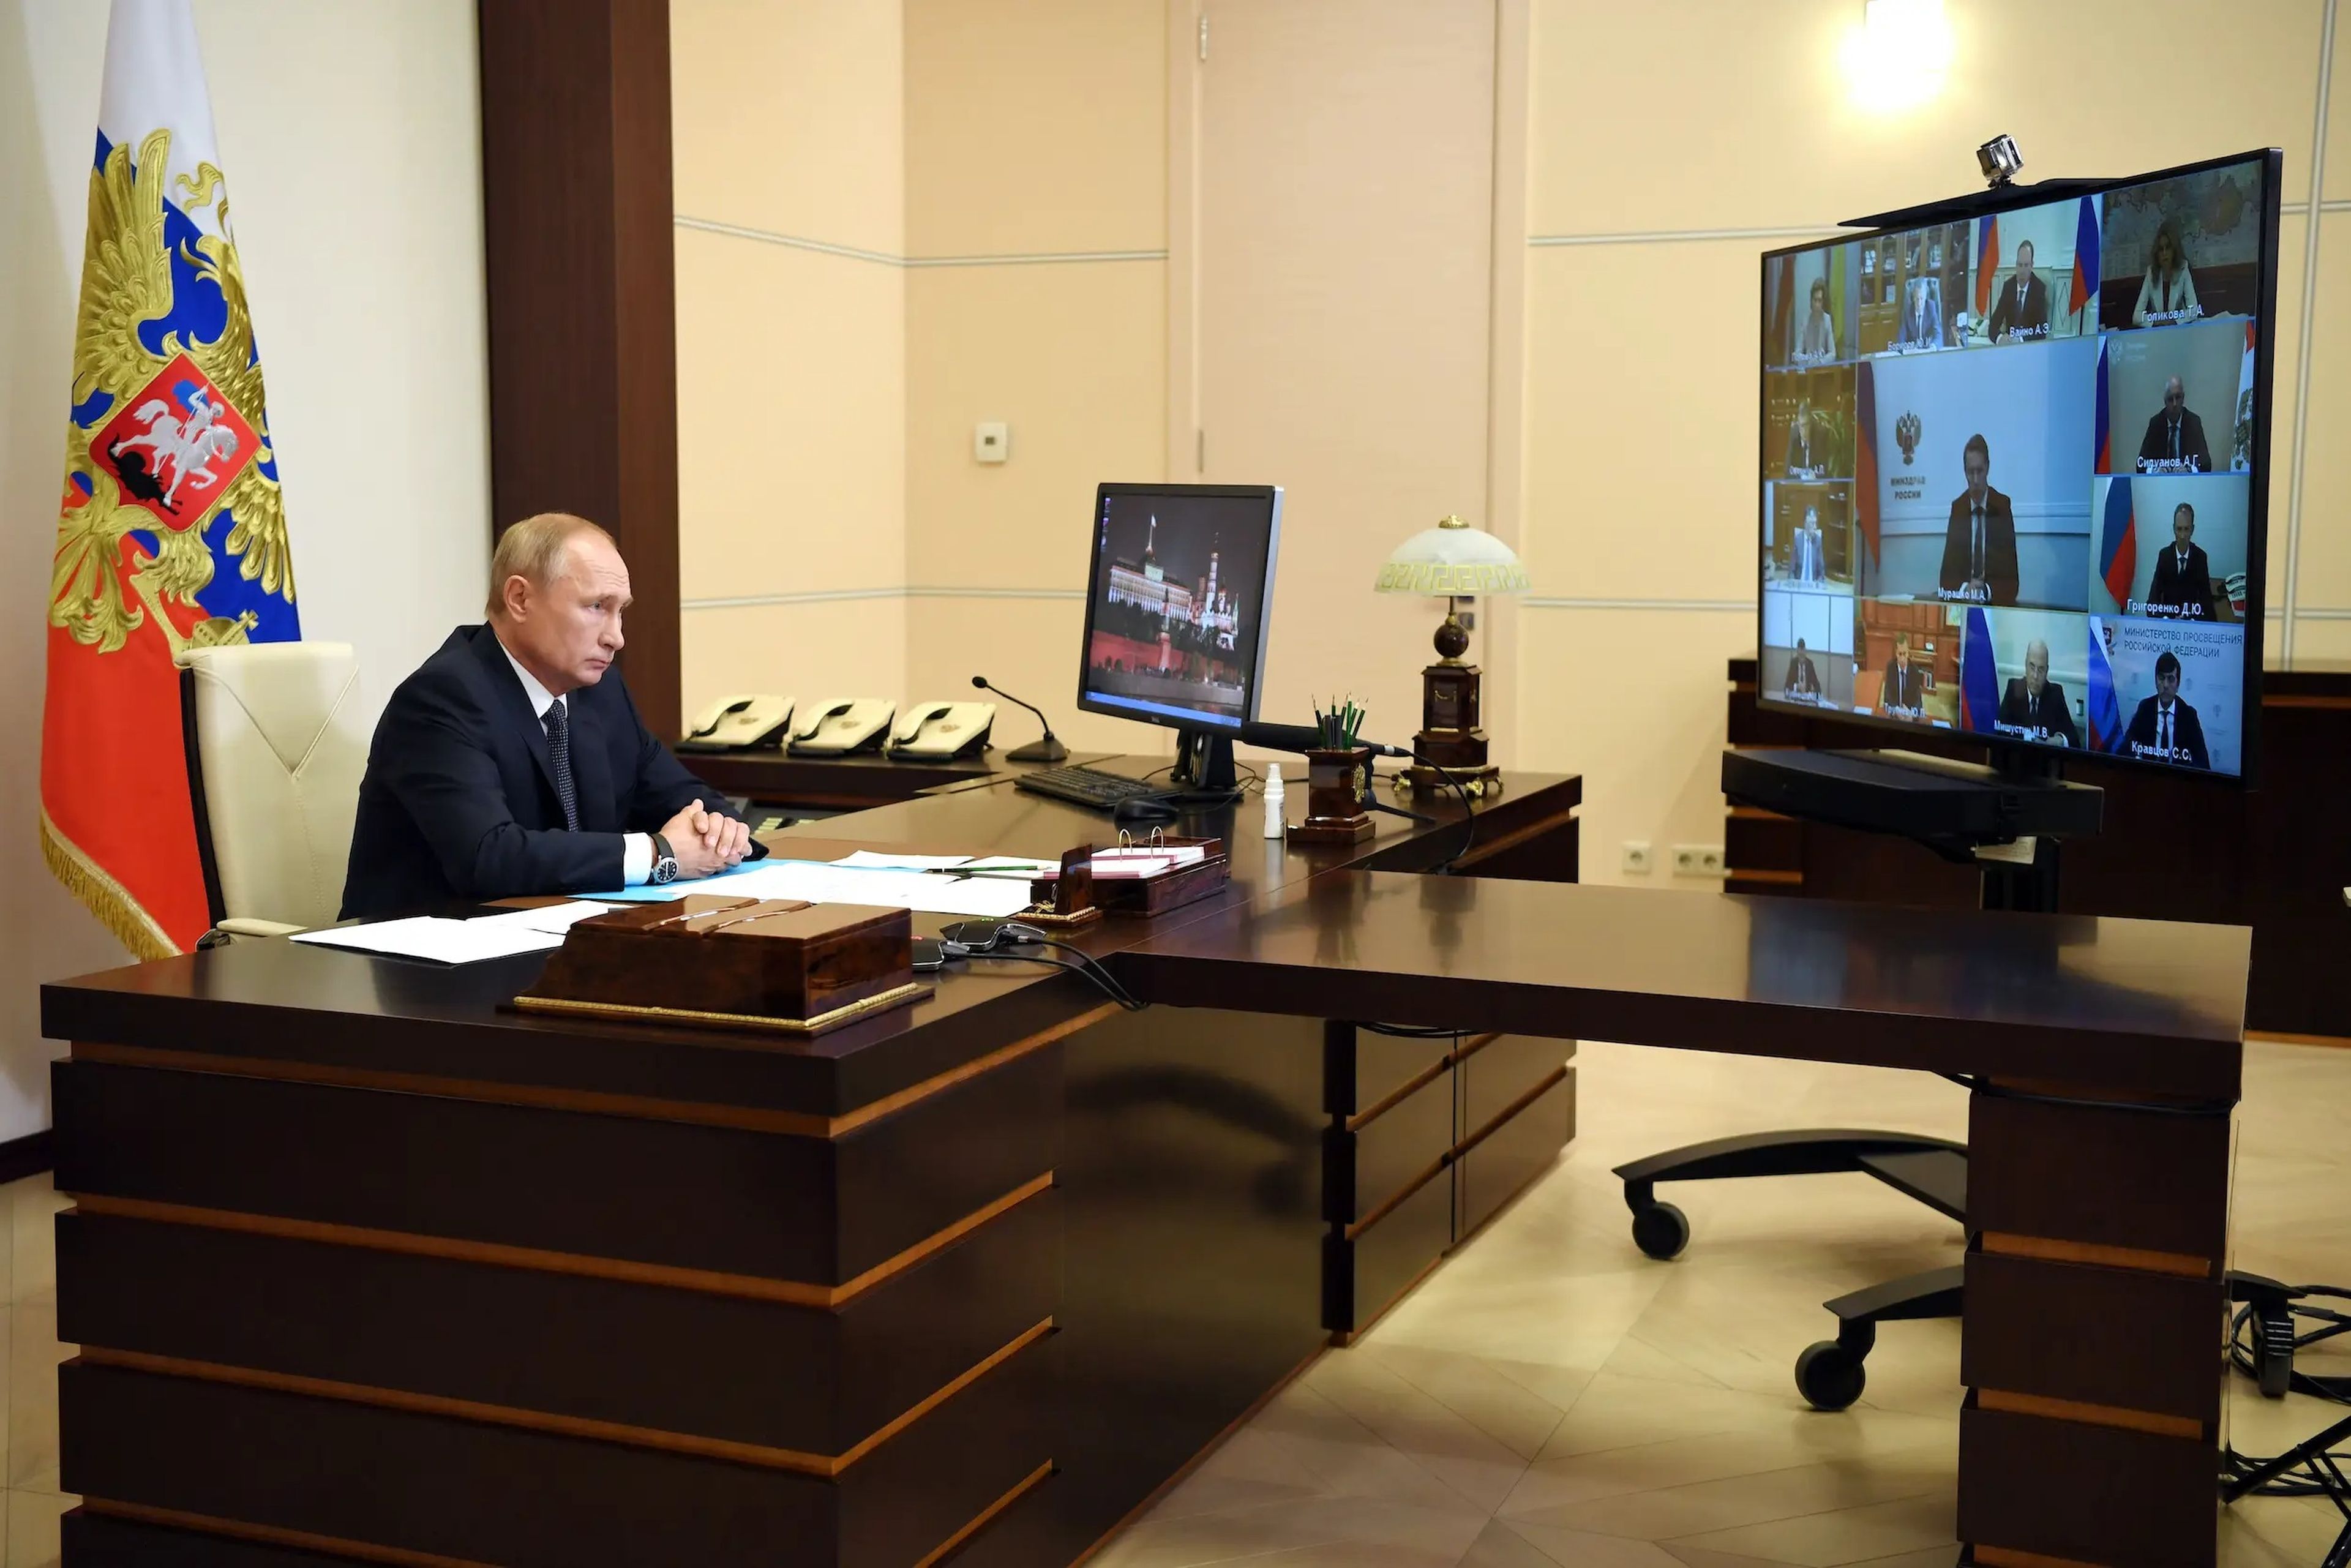 Vladímir Putin preside una reunión con miembros del Gobierno por videoconferencia en la residencia estatal de Novo-Ogaryovo, a las afueras de Moscú (Rusia), el 11 de agosto de 2020.